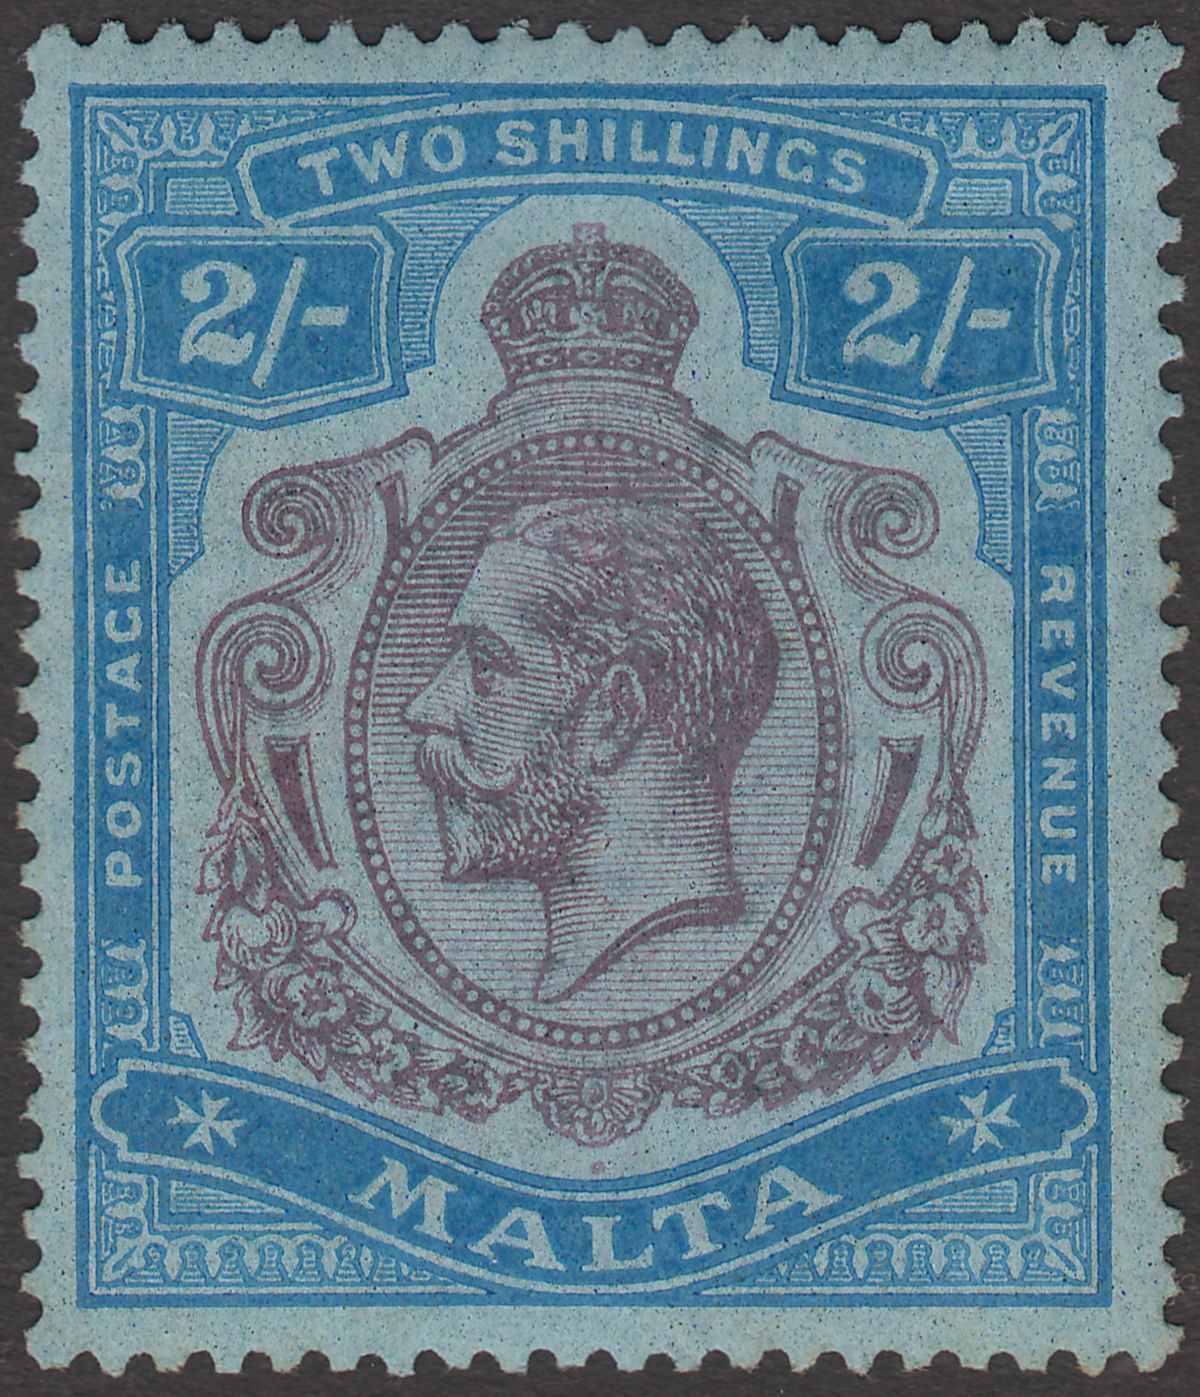 Malta 1922 KGV 2sh Purple and Blue on Blue wmk Script Mint SG103 cat £70